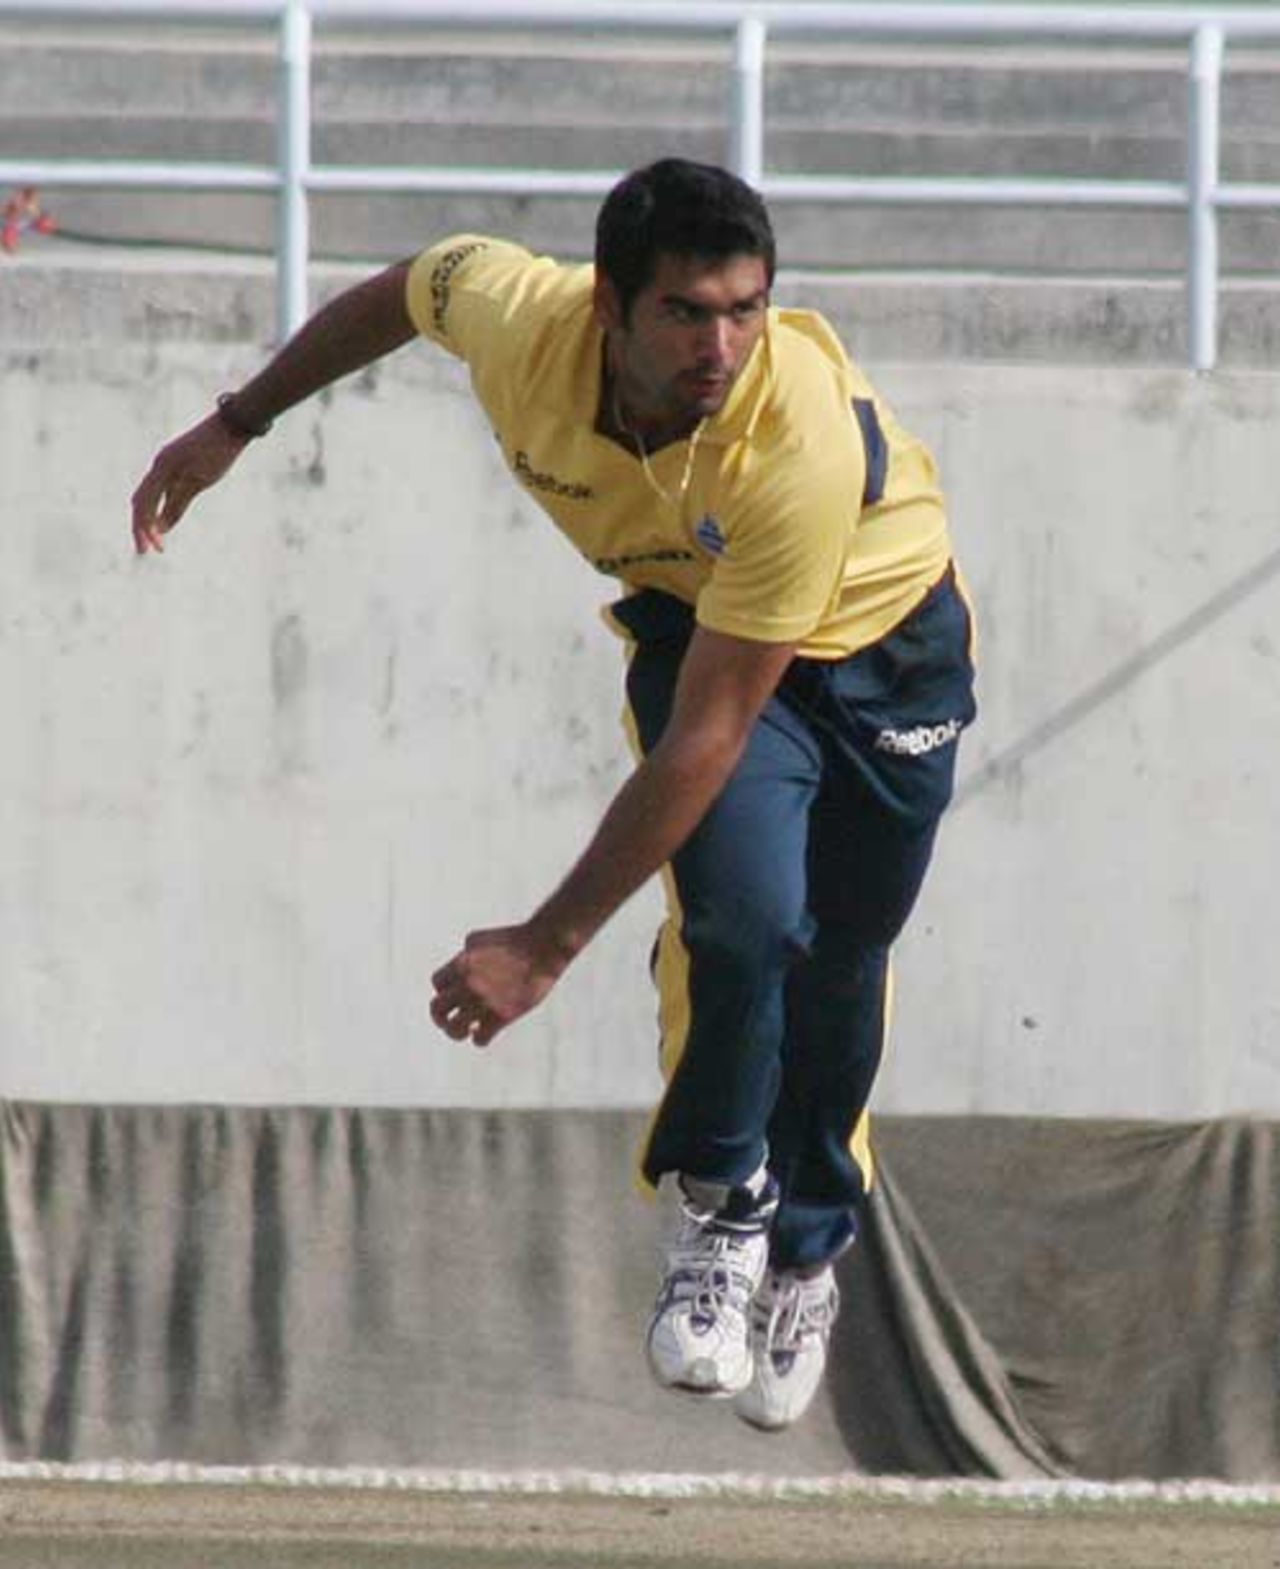 Pradeep Sangwan bowls against Punjab, Delhi v Punjab, Ranji one-dayers, Dharamsala, February 17, 2009